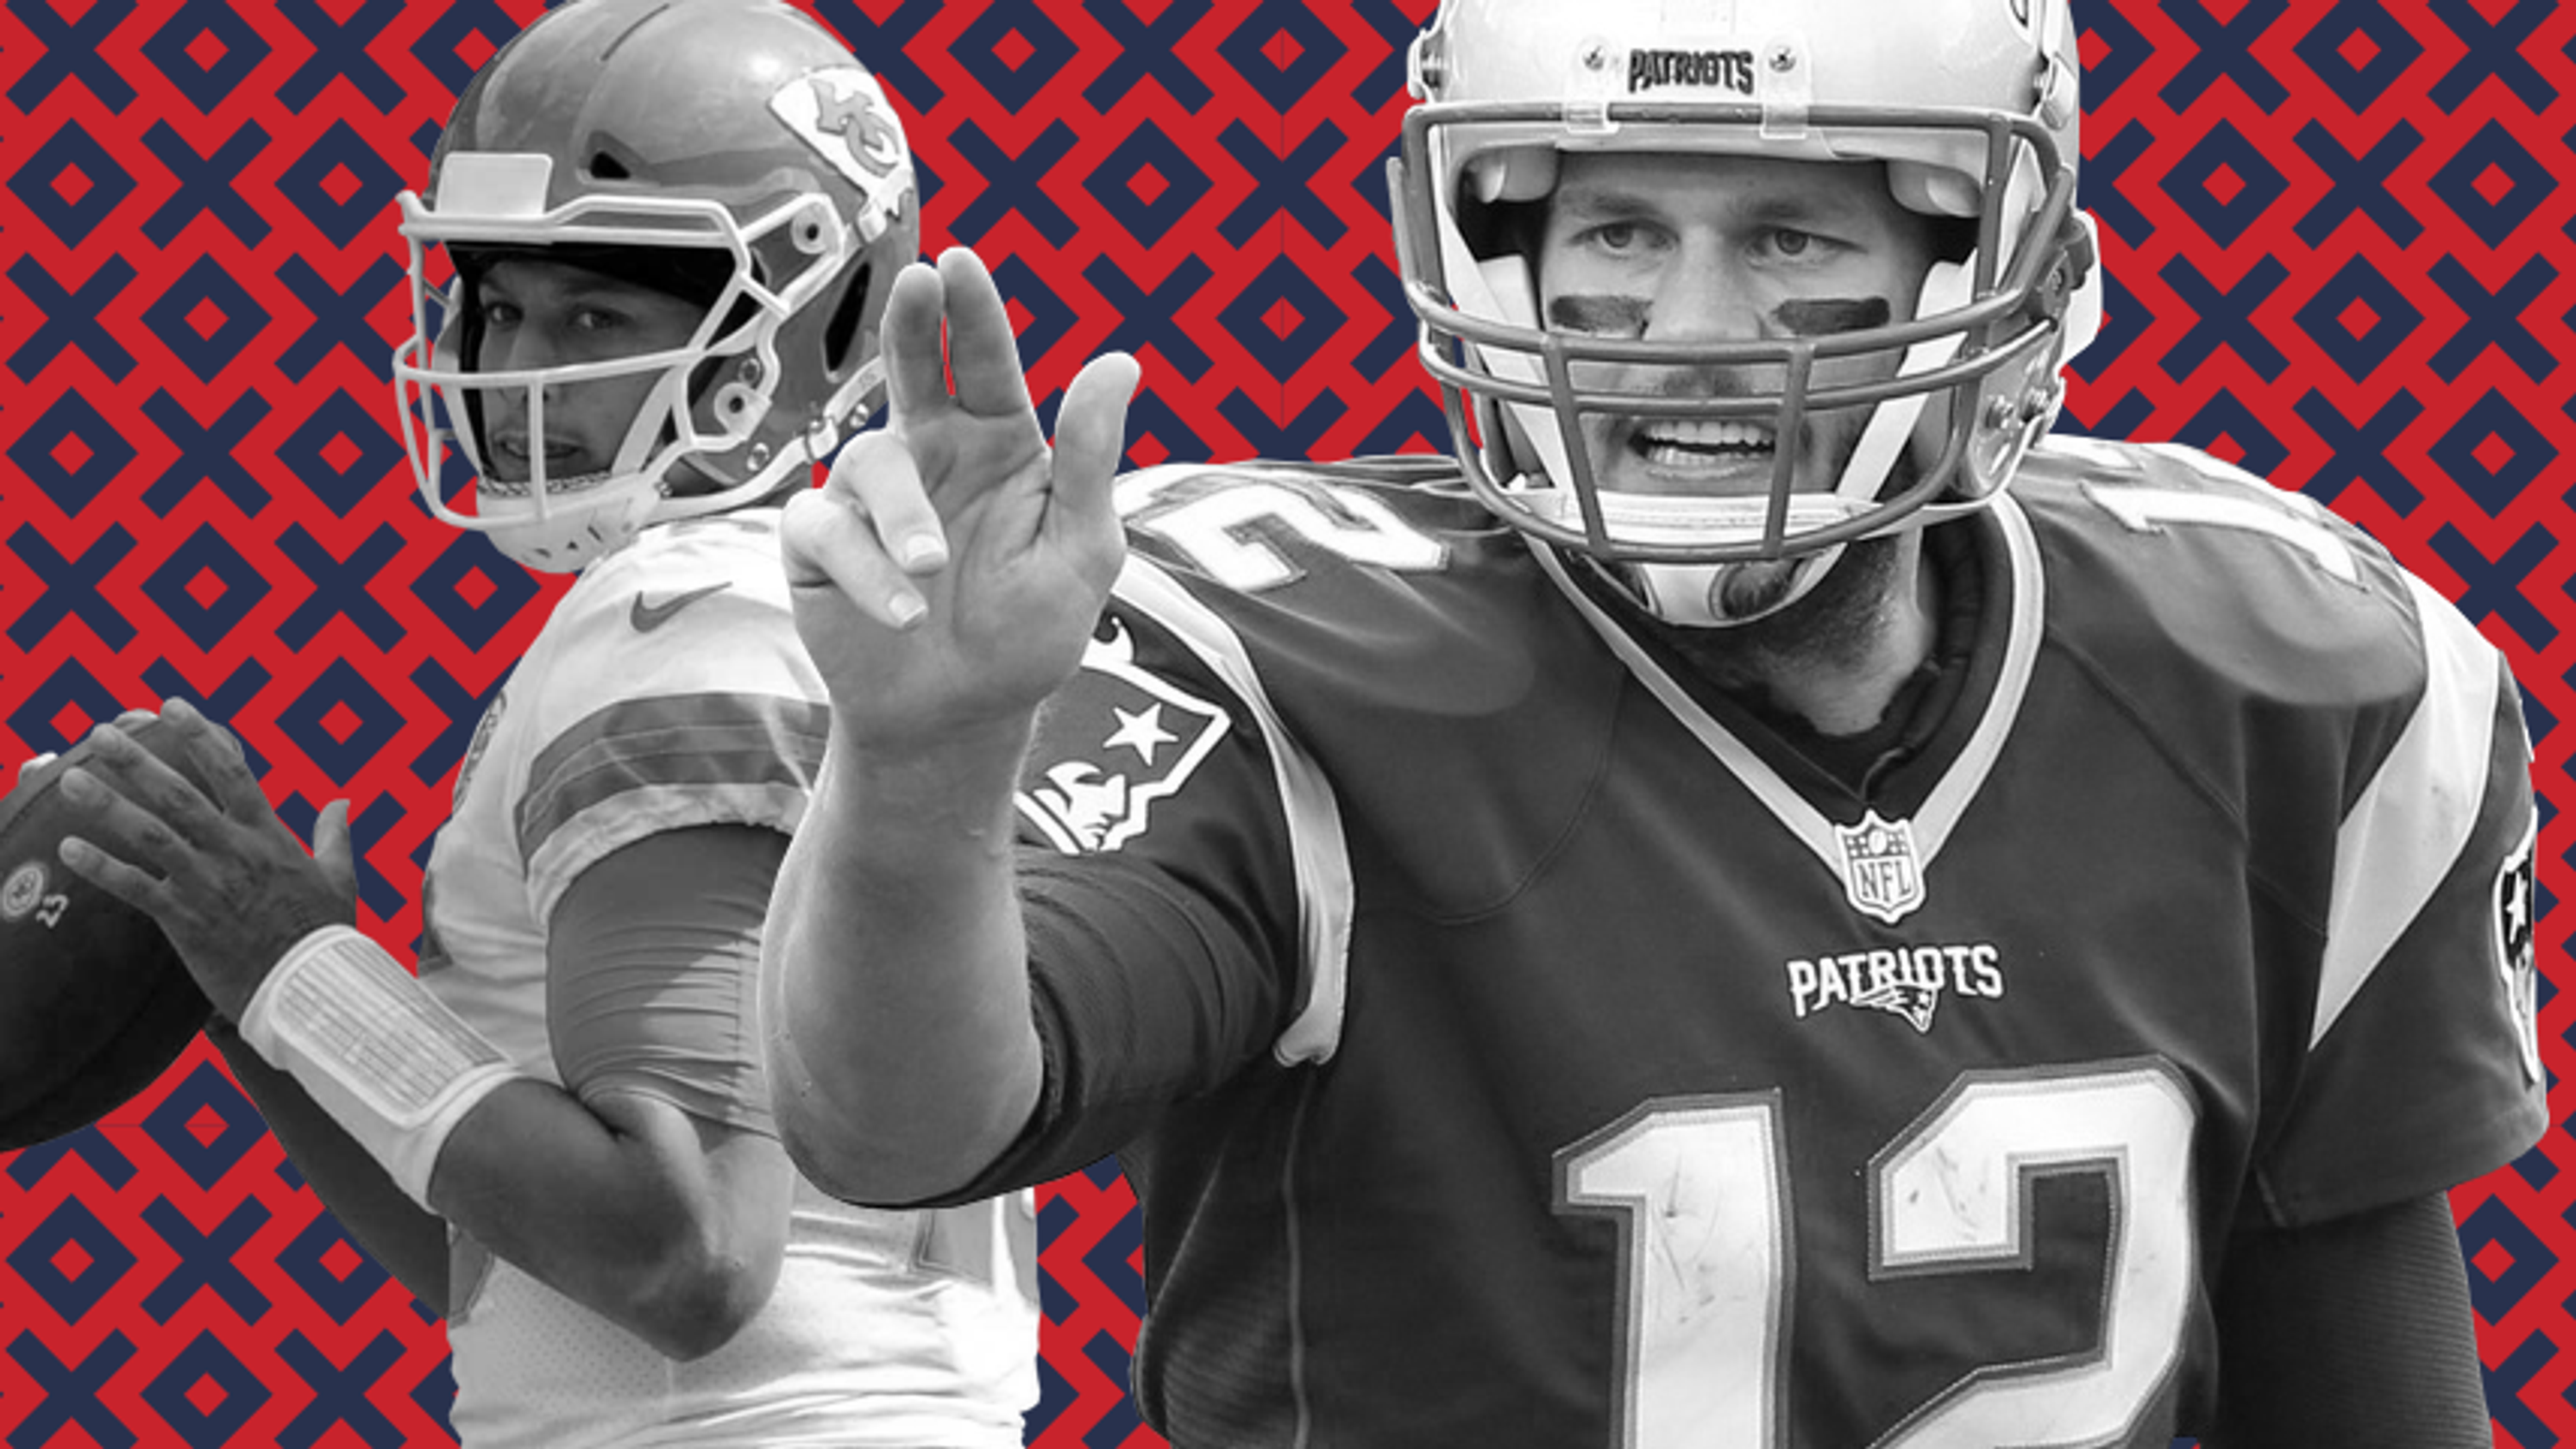 Semana 6 do esporte dos EUA HOJE escolhe dos NFL: Os patriotas, Tom Brady podem derrubar chefes invictos?